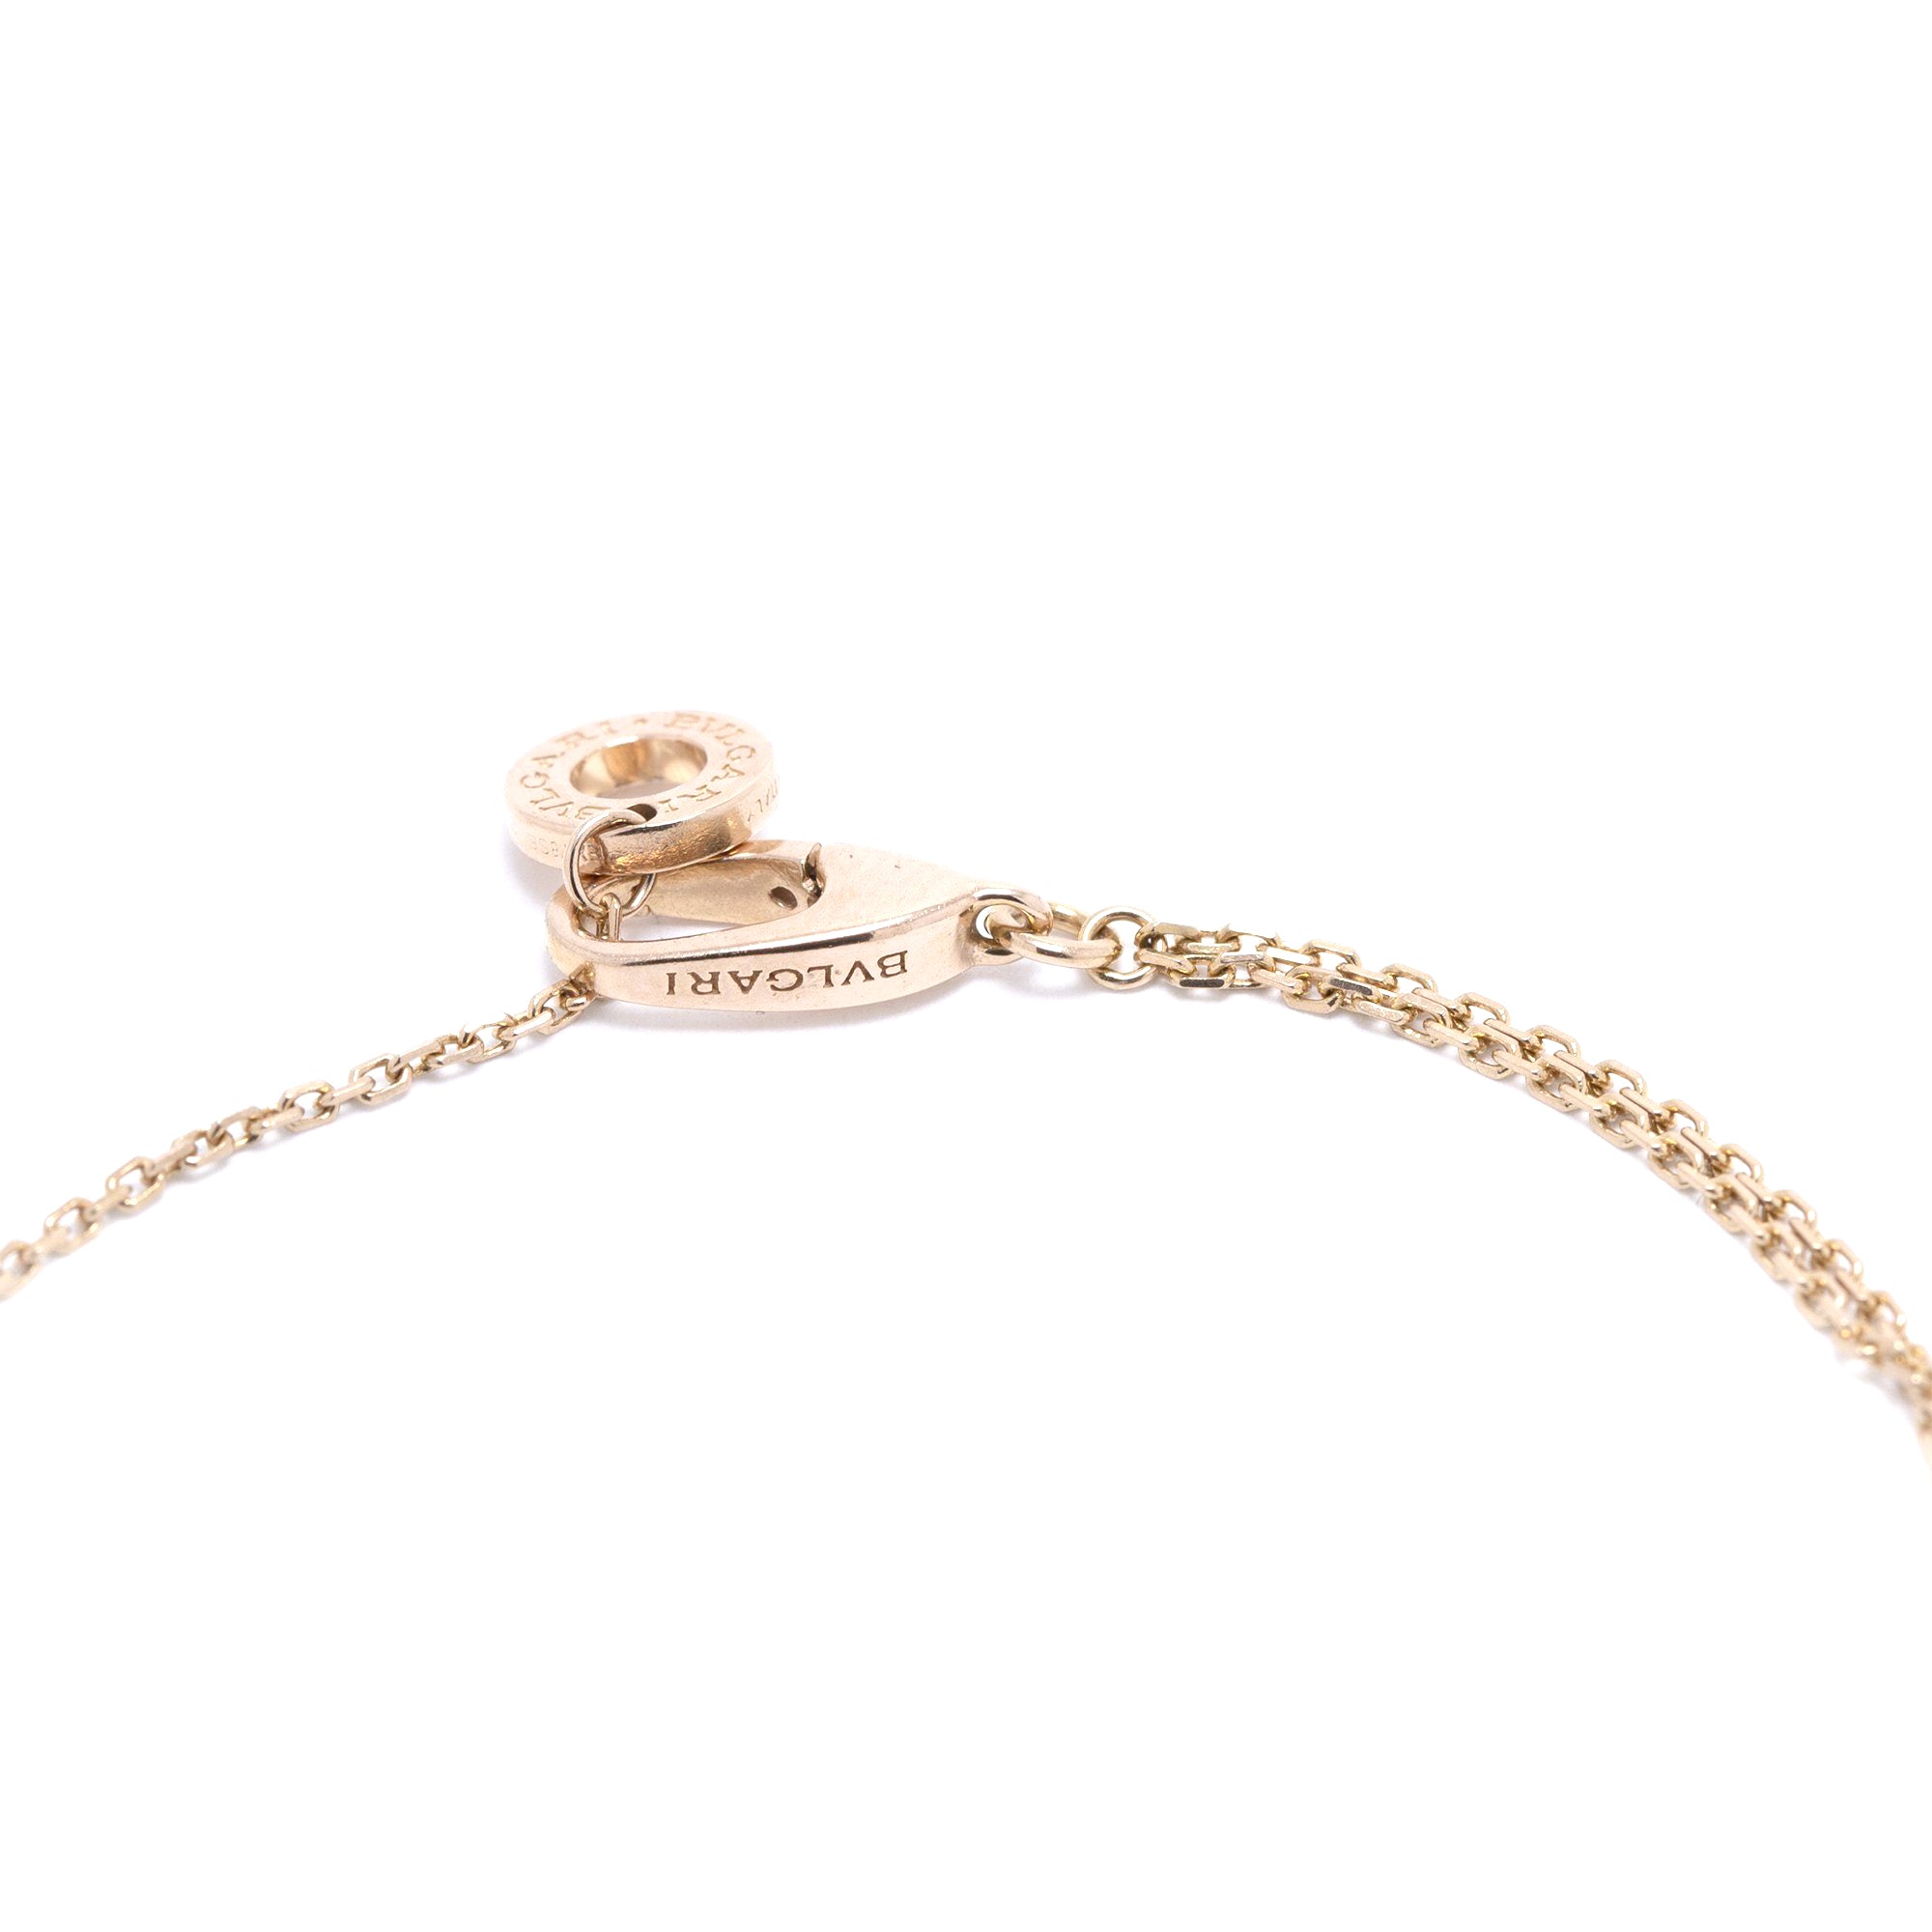 Bvlgari B.zero1 Element Bracelet Pink Gold (18K) No Stone Charm Bracele  BF563797 | eBay